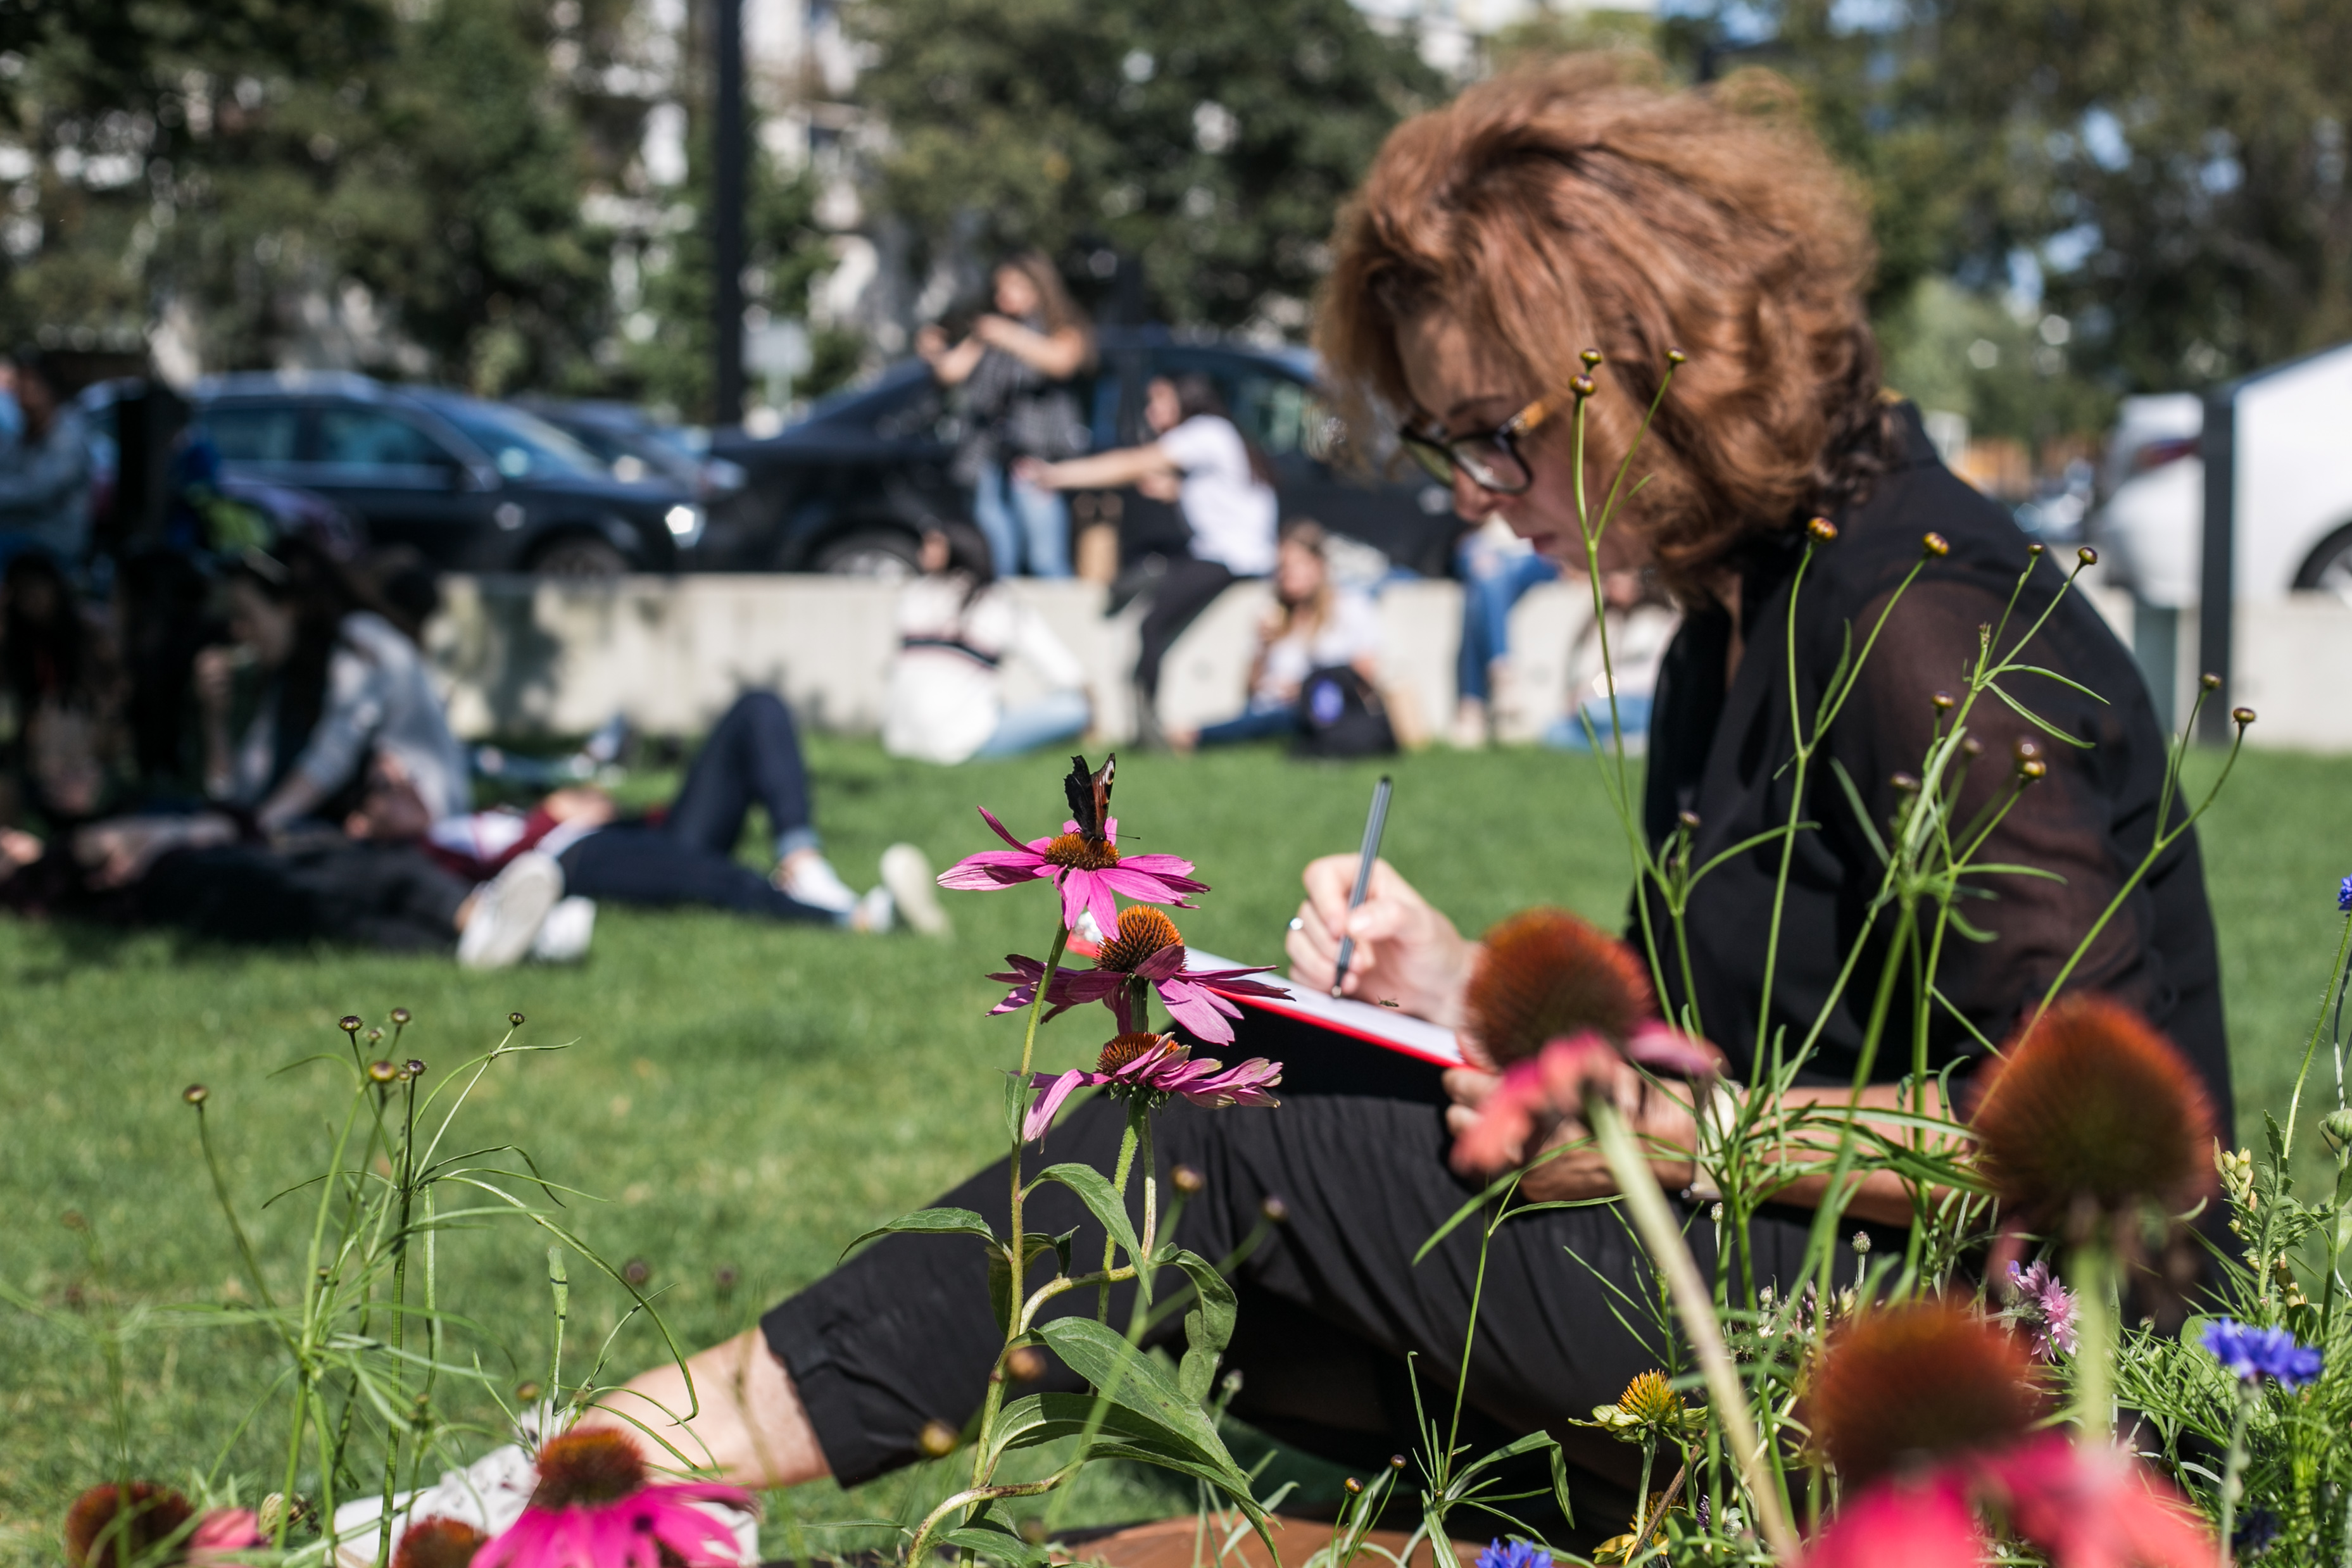 na obrazie widzimy kobietę siedząca na trawie, notująca w notesie opartym o kolana. 